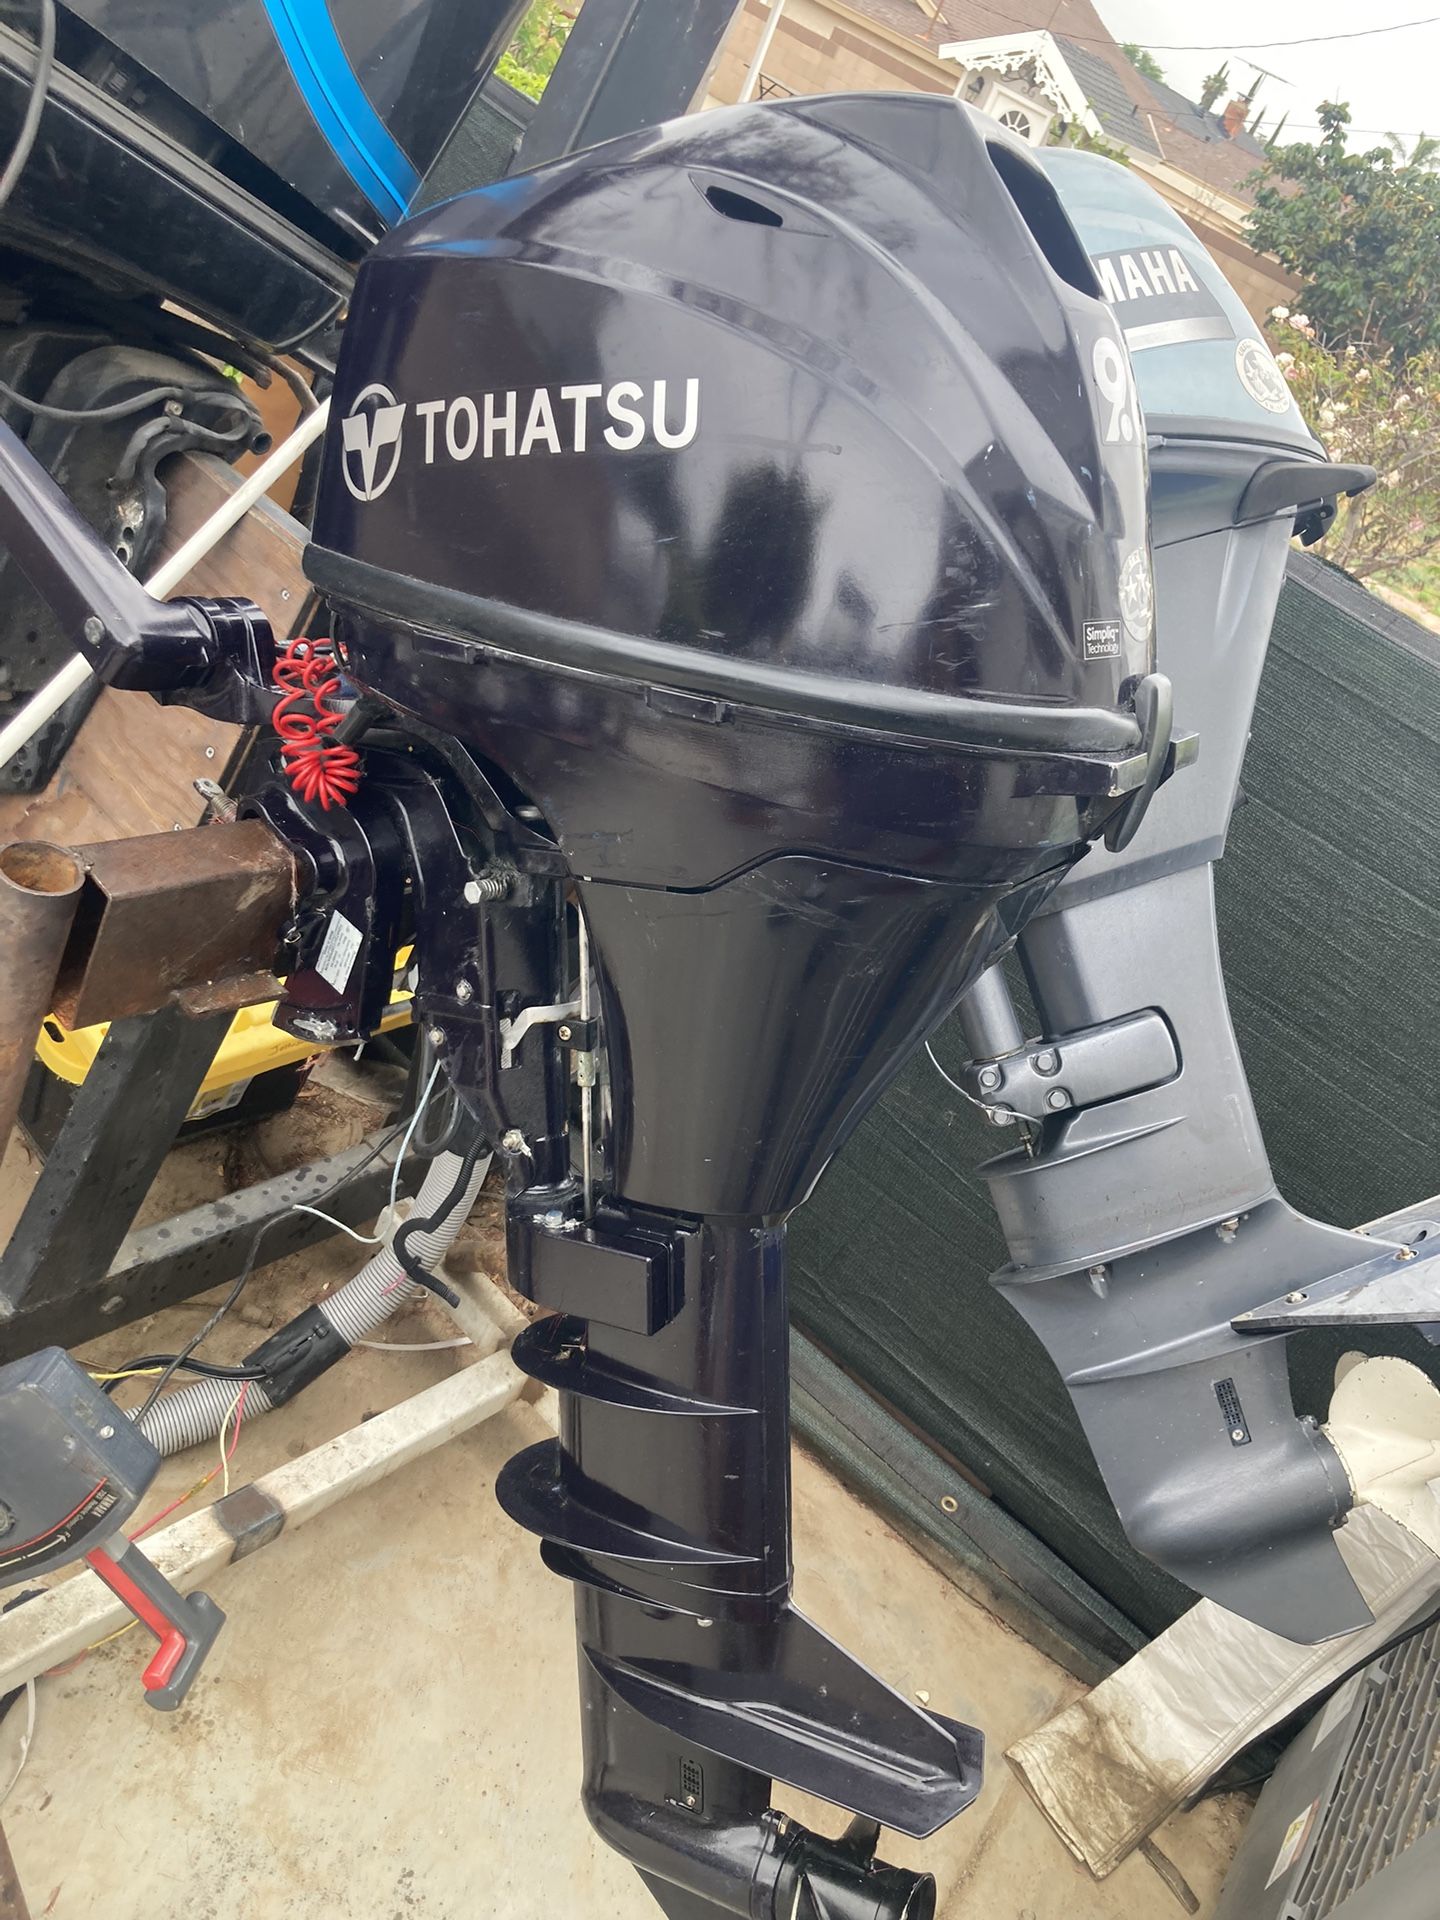 2019 9.8 Tohatsu Outboard’